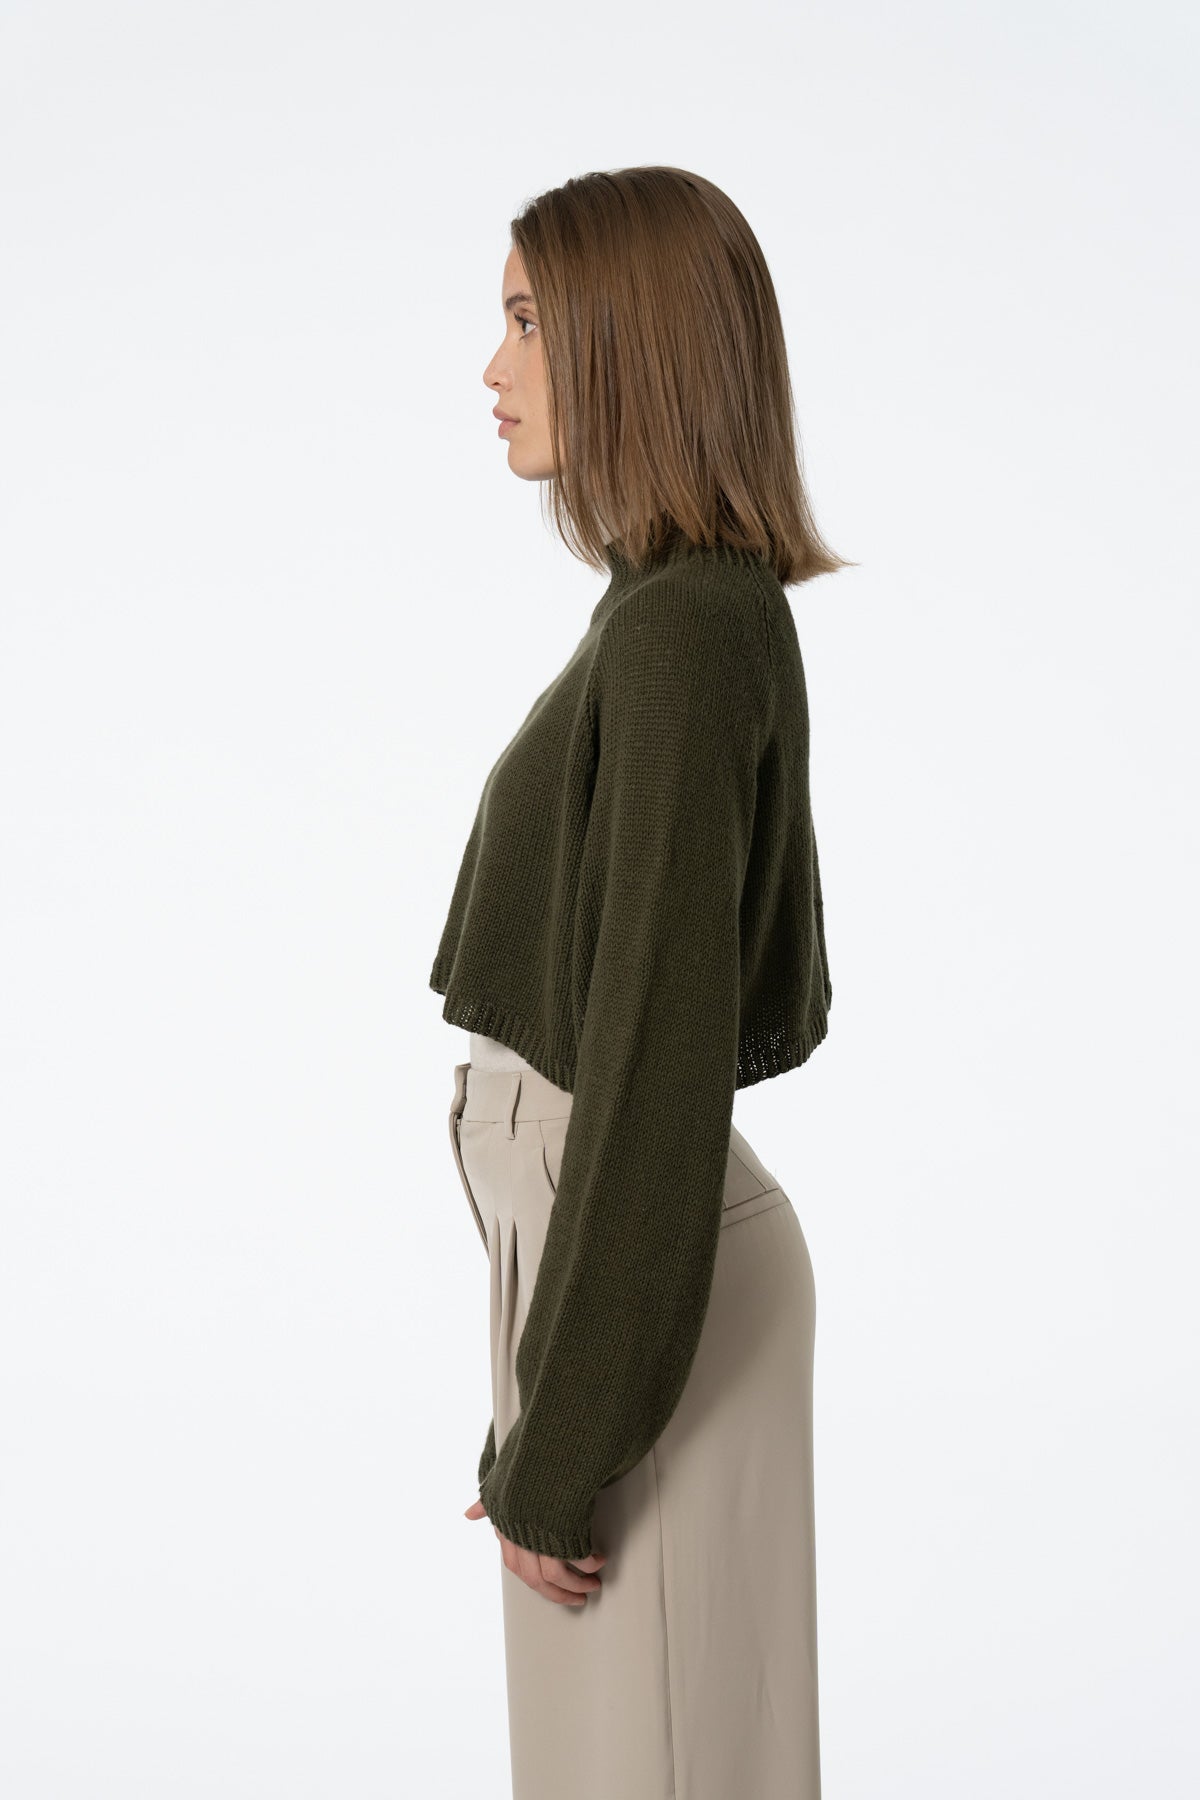 Dinadi Merino Cropped Sweater in Olive Green Fall 23/24